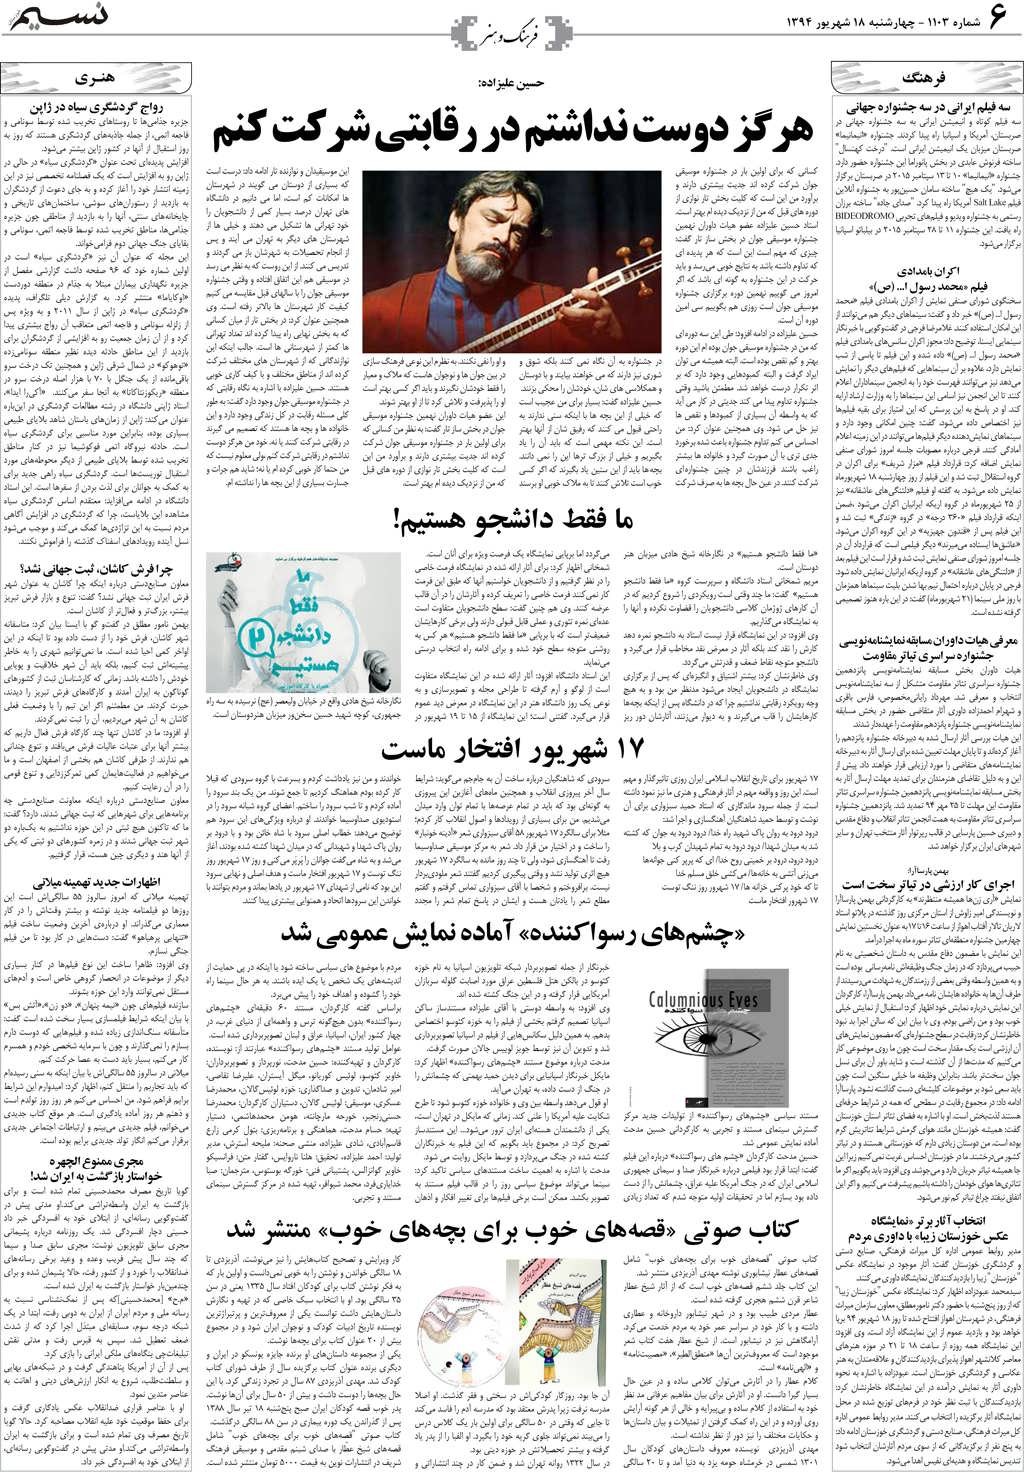 صفحه فرهنگ و هنر روزنامه نسیم شماره 1103